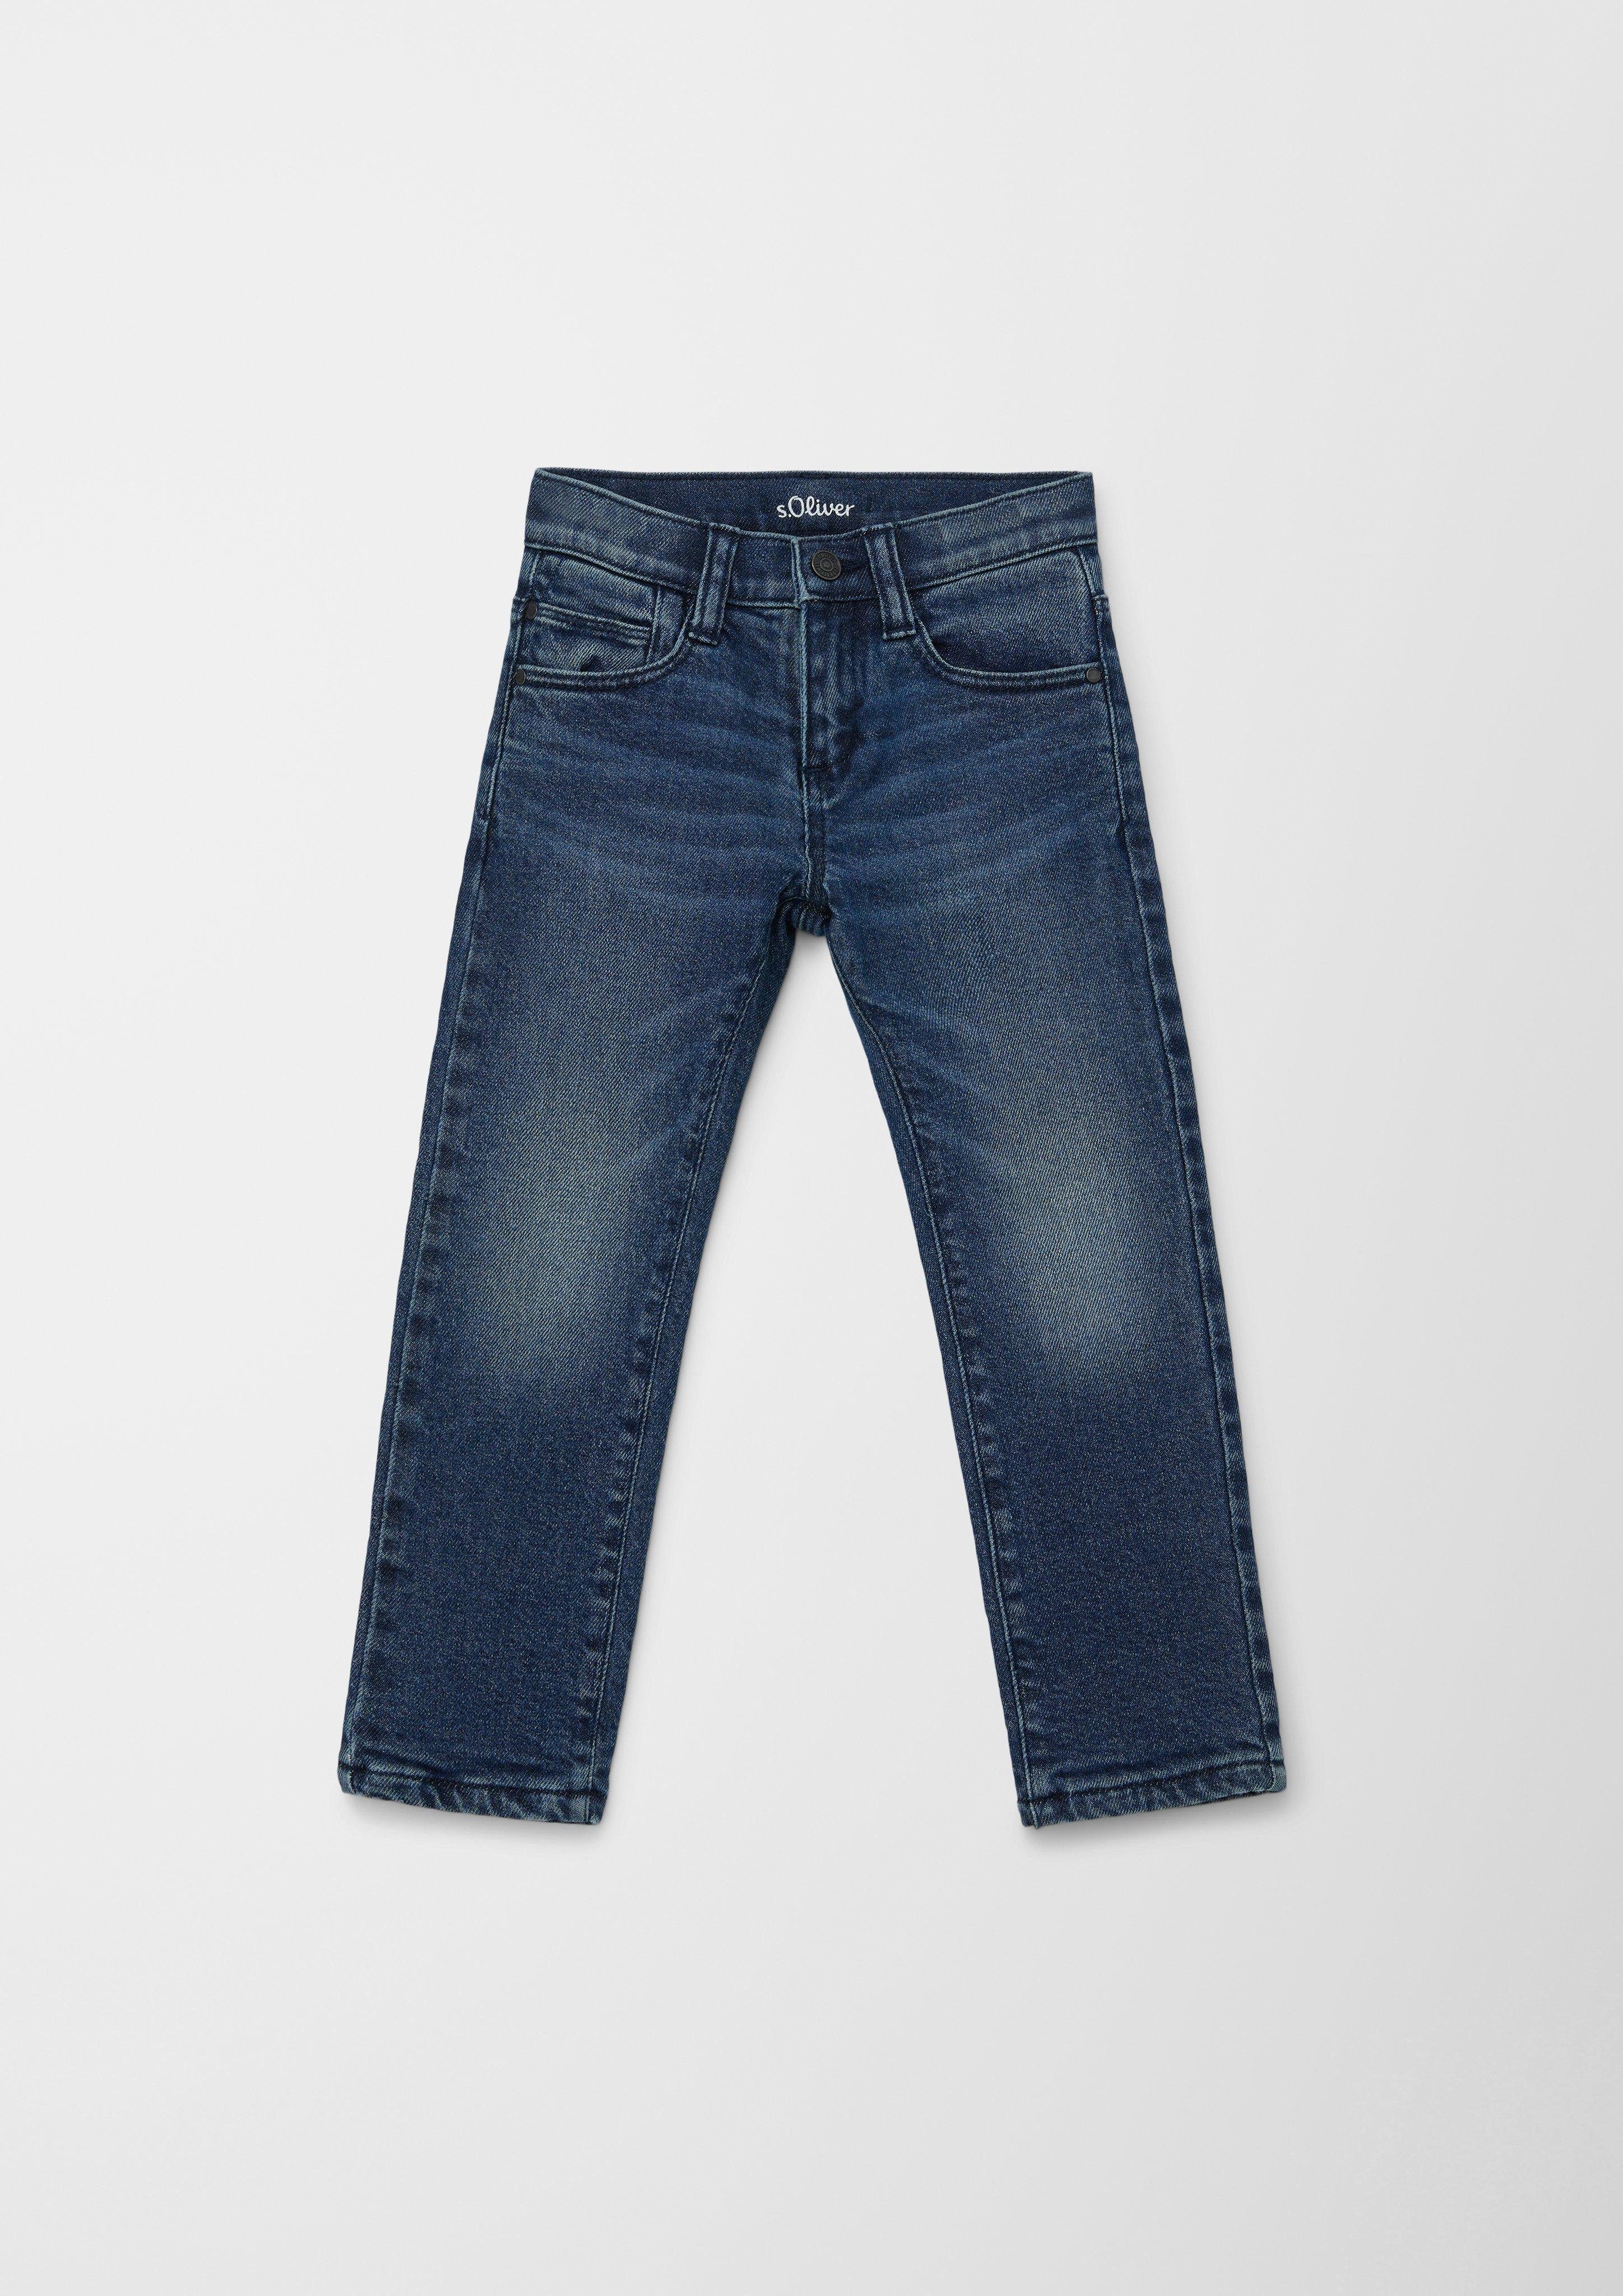 s.Oliver Junior s.Oliver 5-Pocket-Jeans Gefütterte Jeans Pelle / Regular Fit / Mid Rise / Straight Leg Waschung